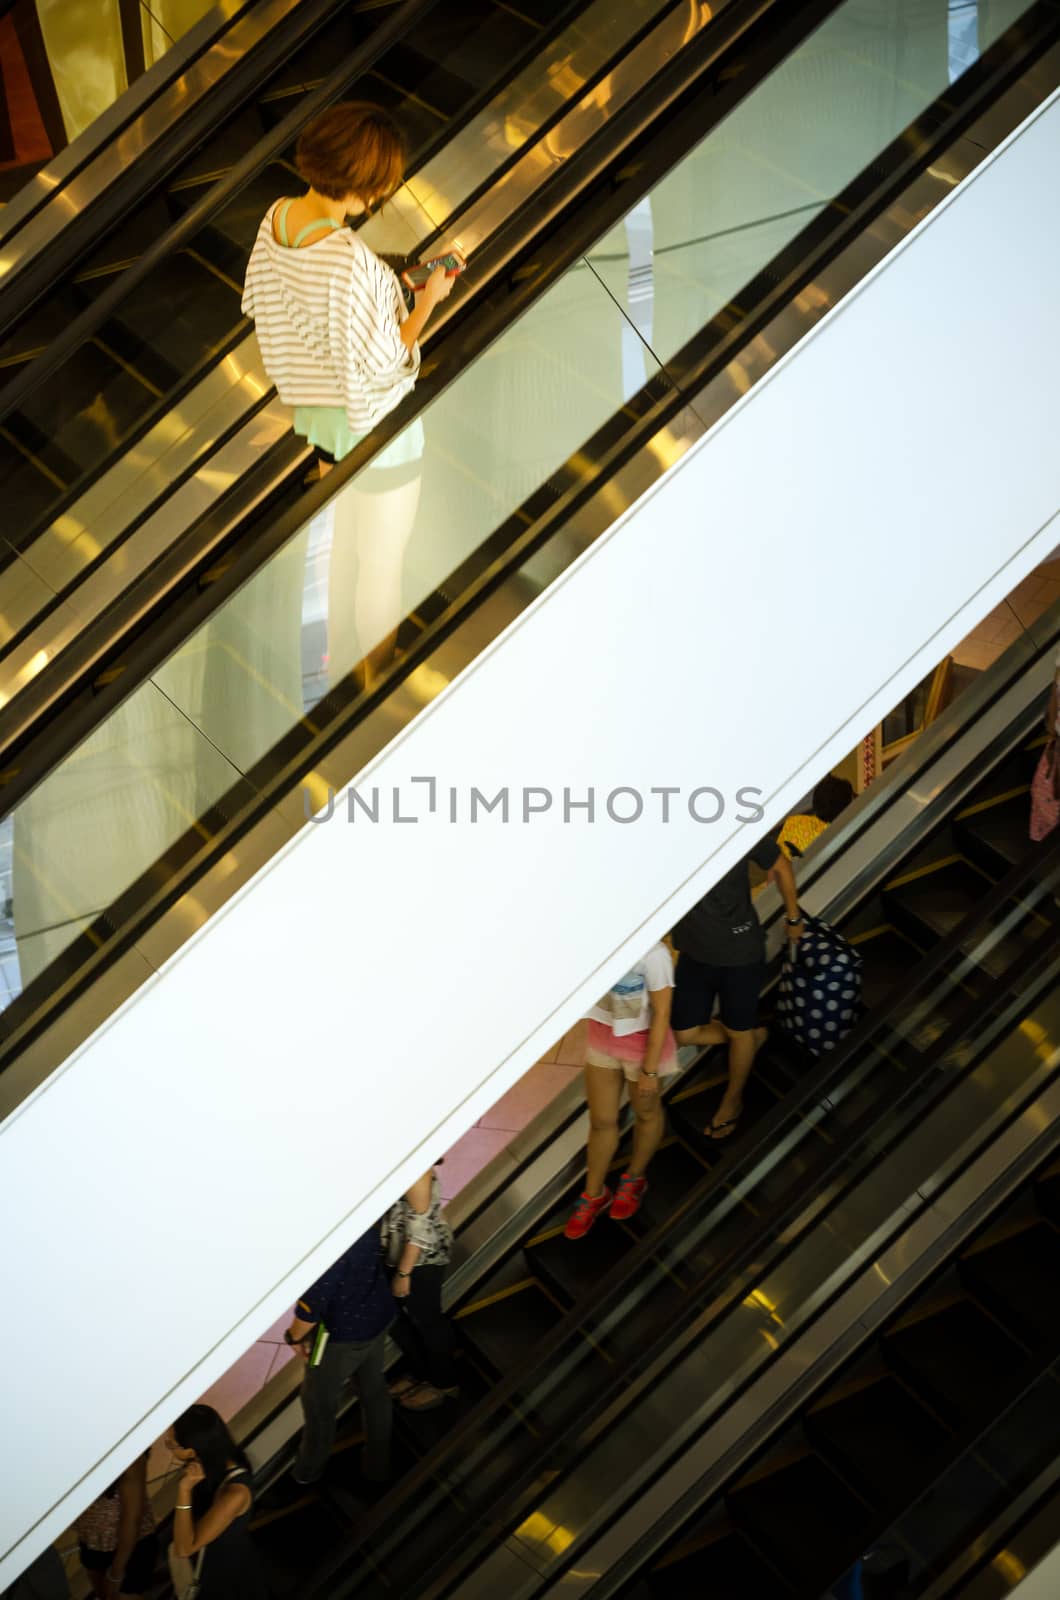 Bangkok, Thailand - September 12, 2013: Shoppers on escalator at Terminal21 shopping mall by siraanamwong